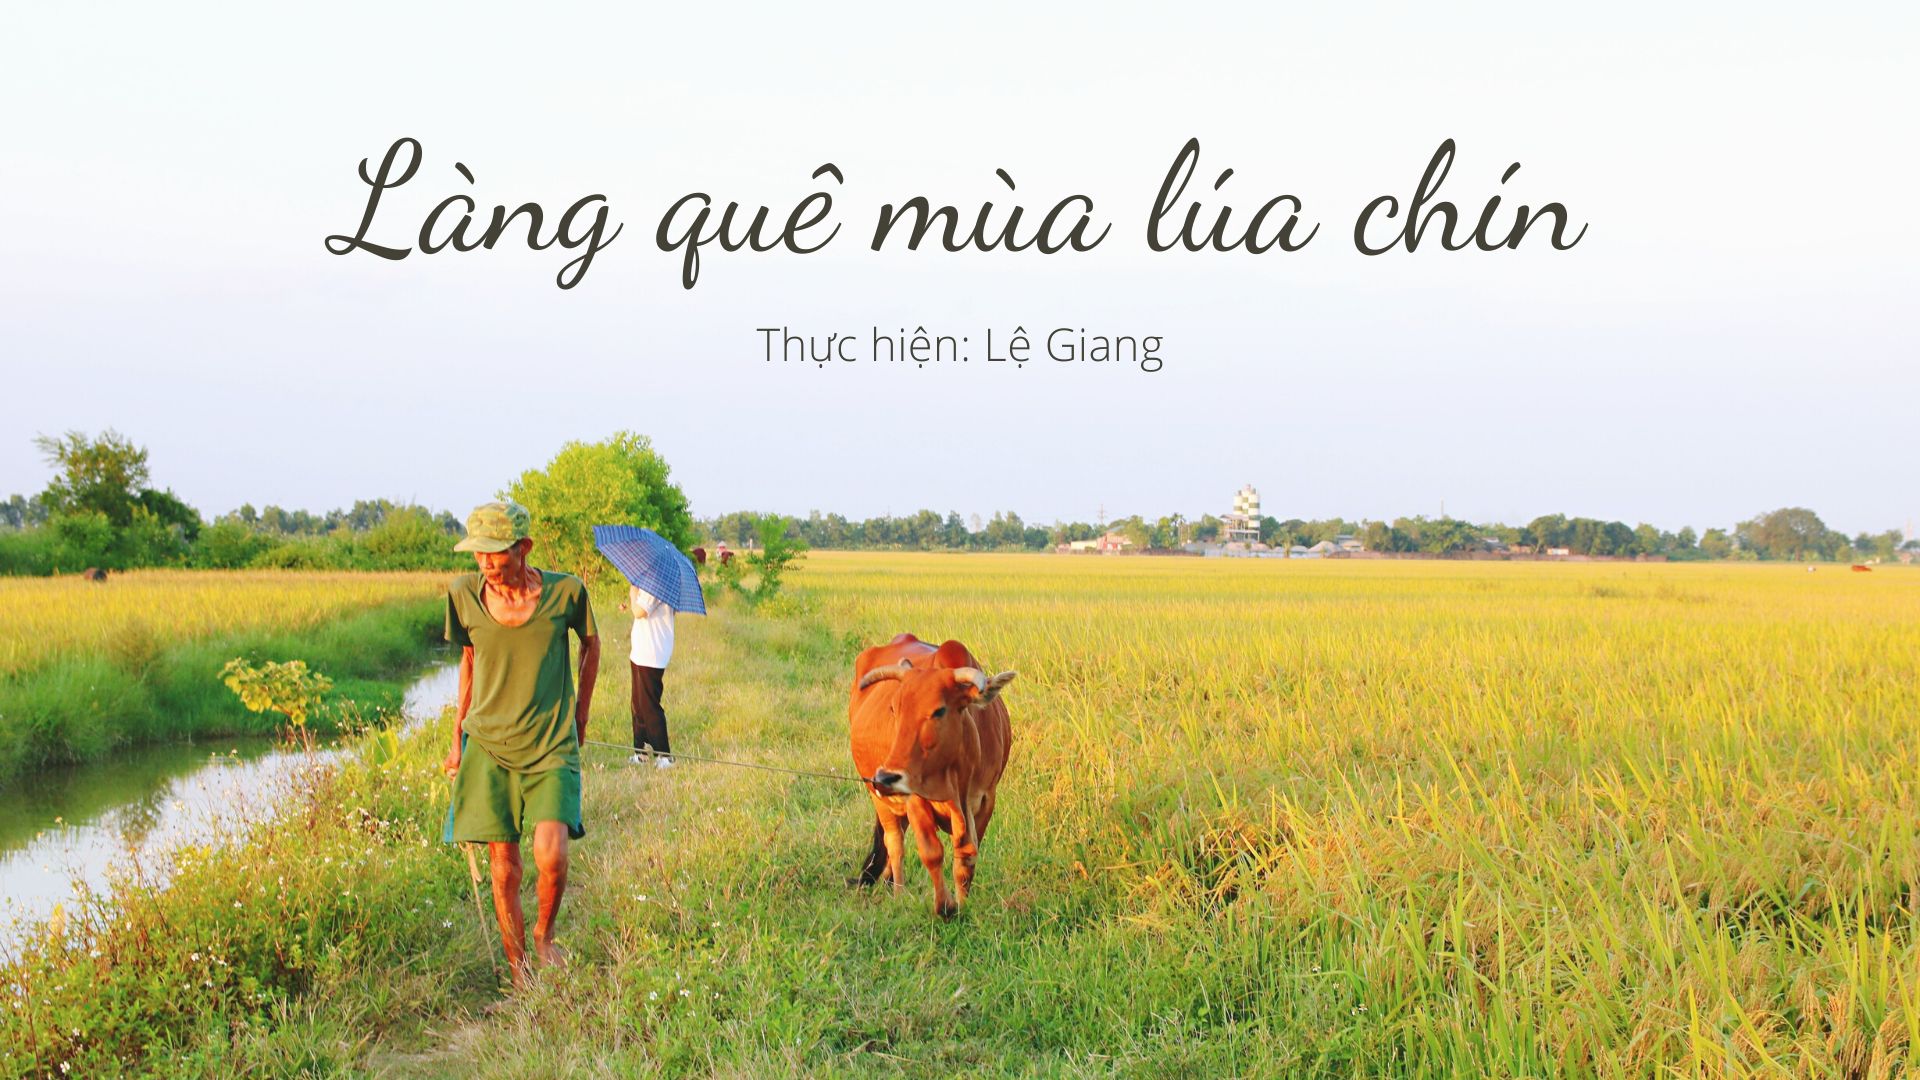 Con đường làng quê là nơi lưu giữ và phát triển nền văn hóa truyền thống của Việt Nam. Bức ảnh liên quan sẽ giúp bạn có những trải nghiệm đầy thú vị trên những con đường đất trải dài, đi qua những ngôi nhà cổ kính và cảm nhận không khí yên bình của làng quê.